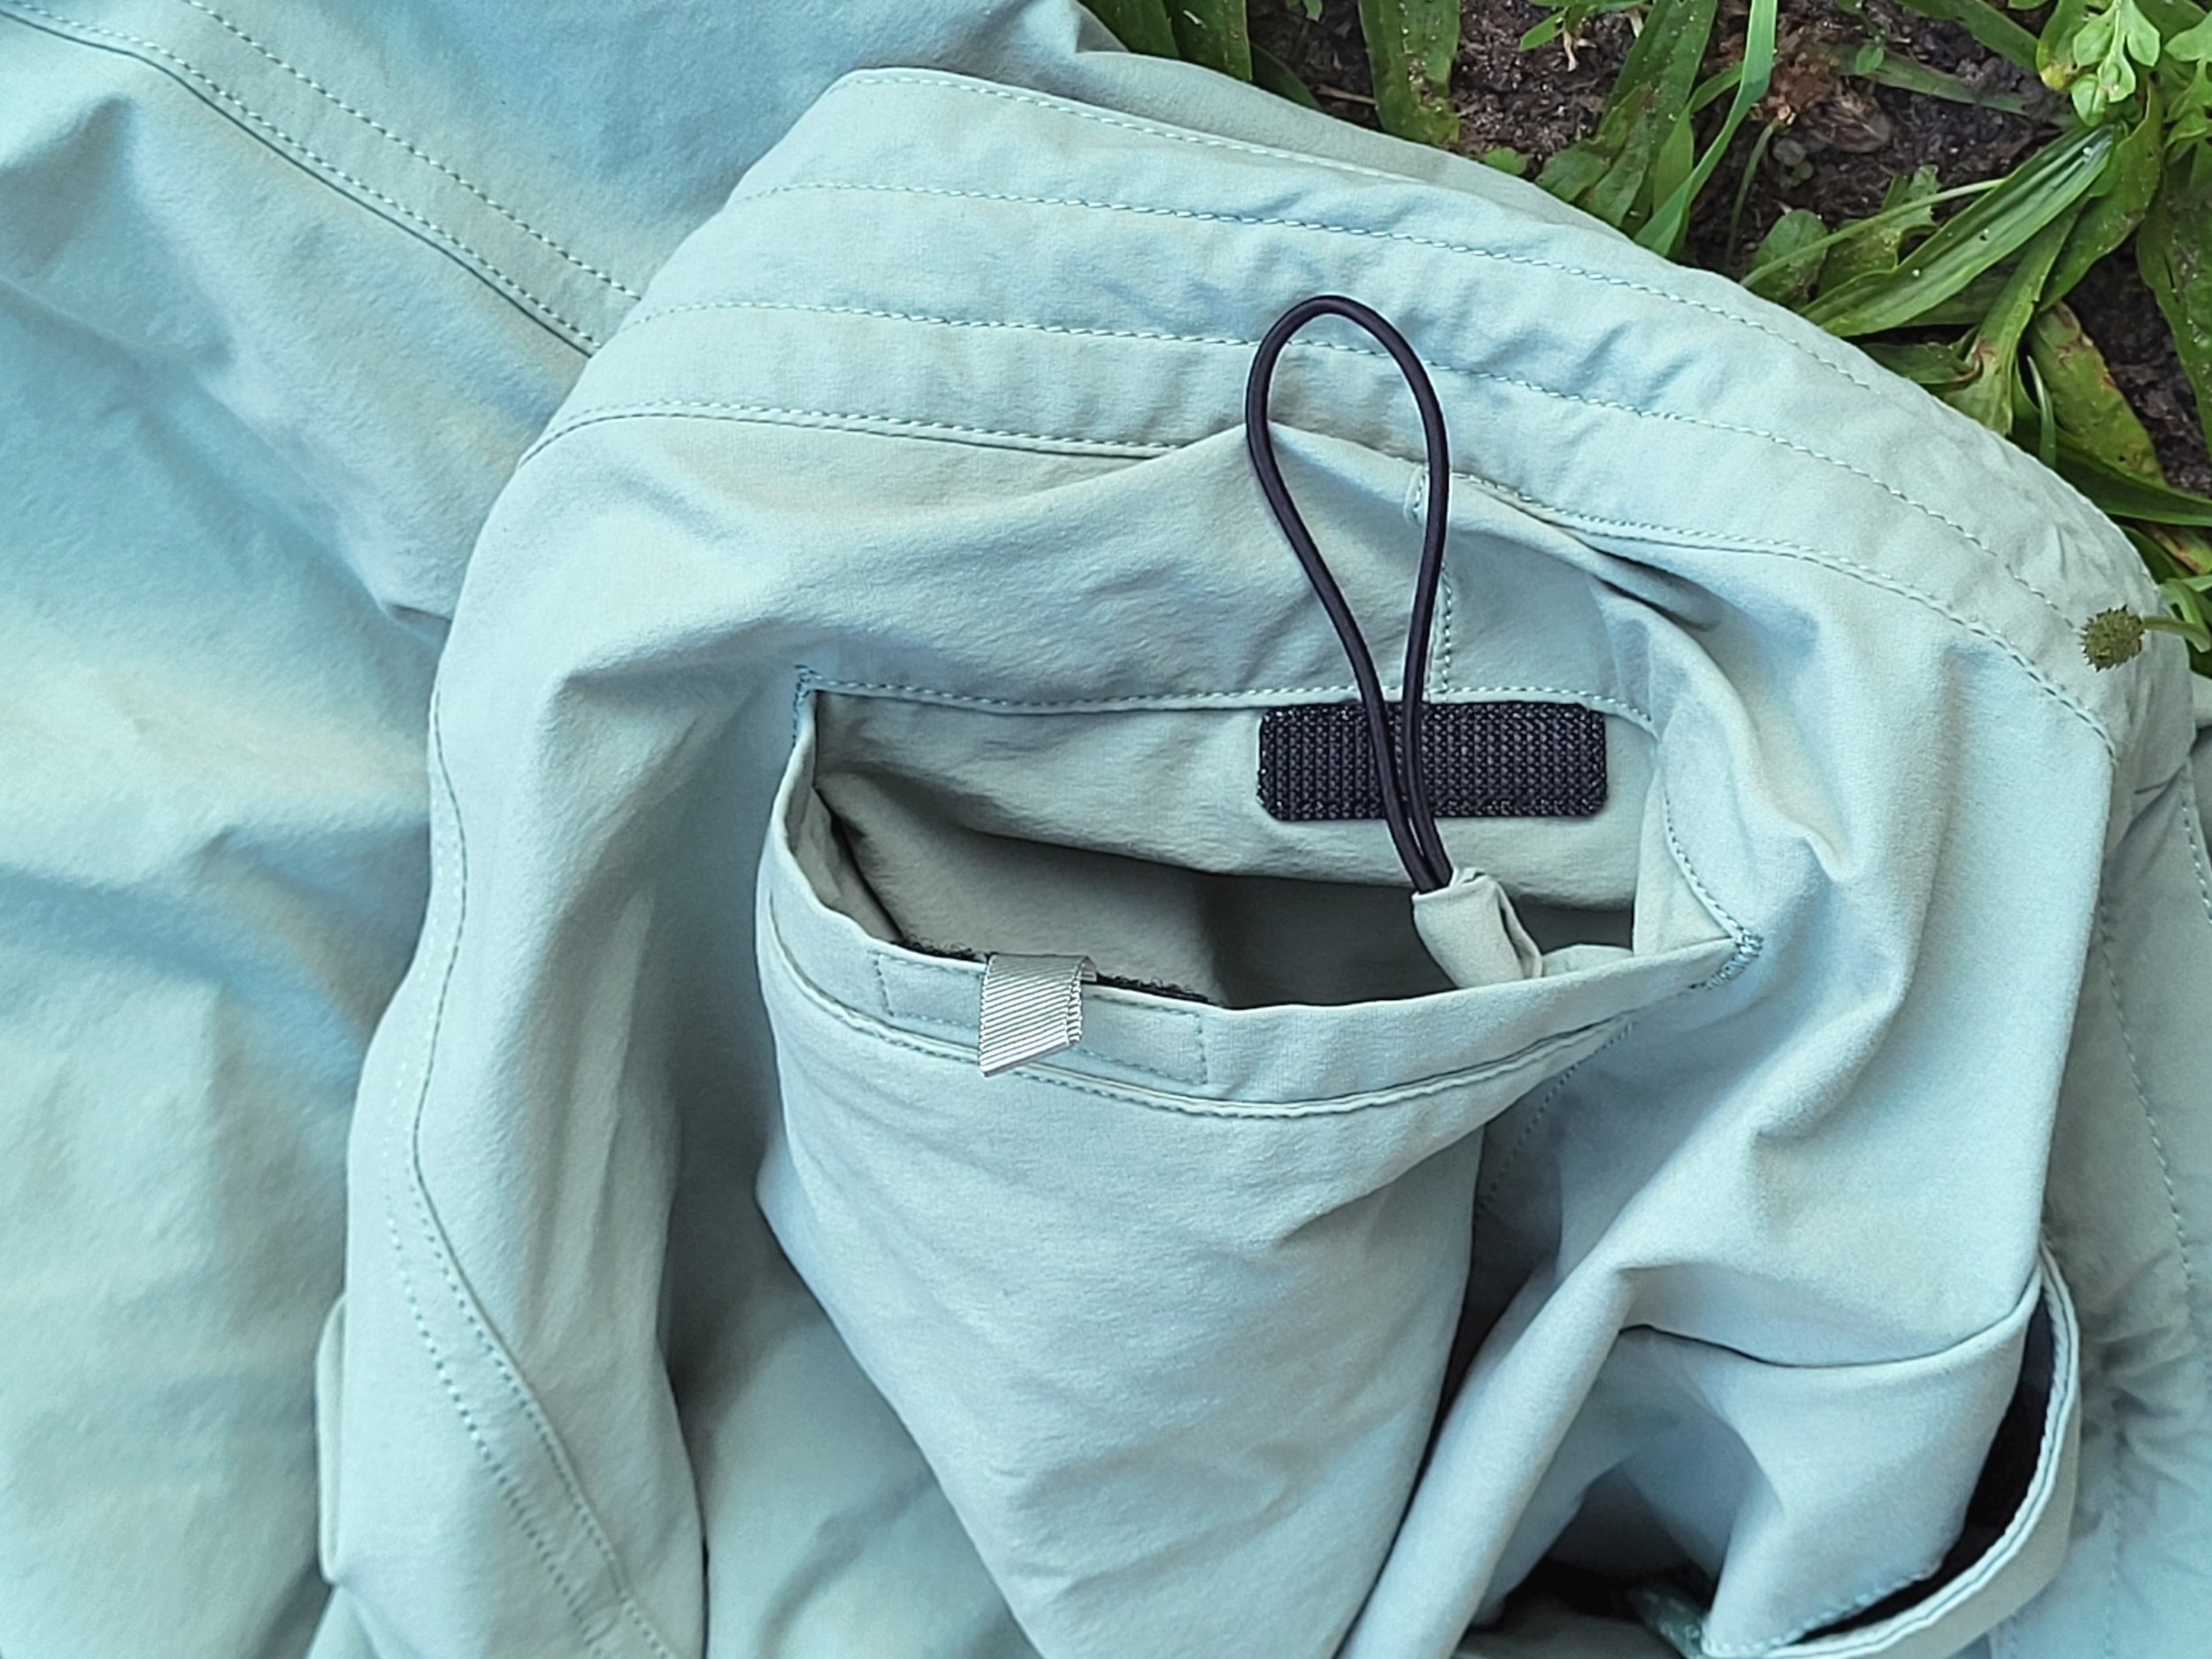 Gesäßtasche mit Klettverschluss der Patagonia Wavefarer Hybrid Walk Shorts